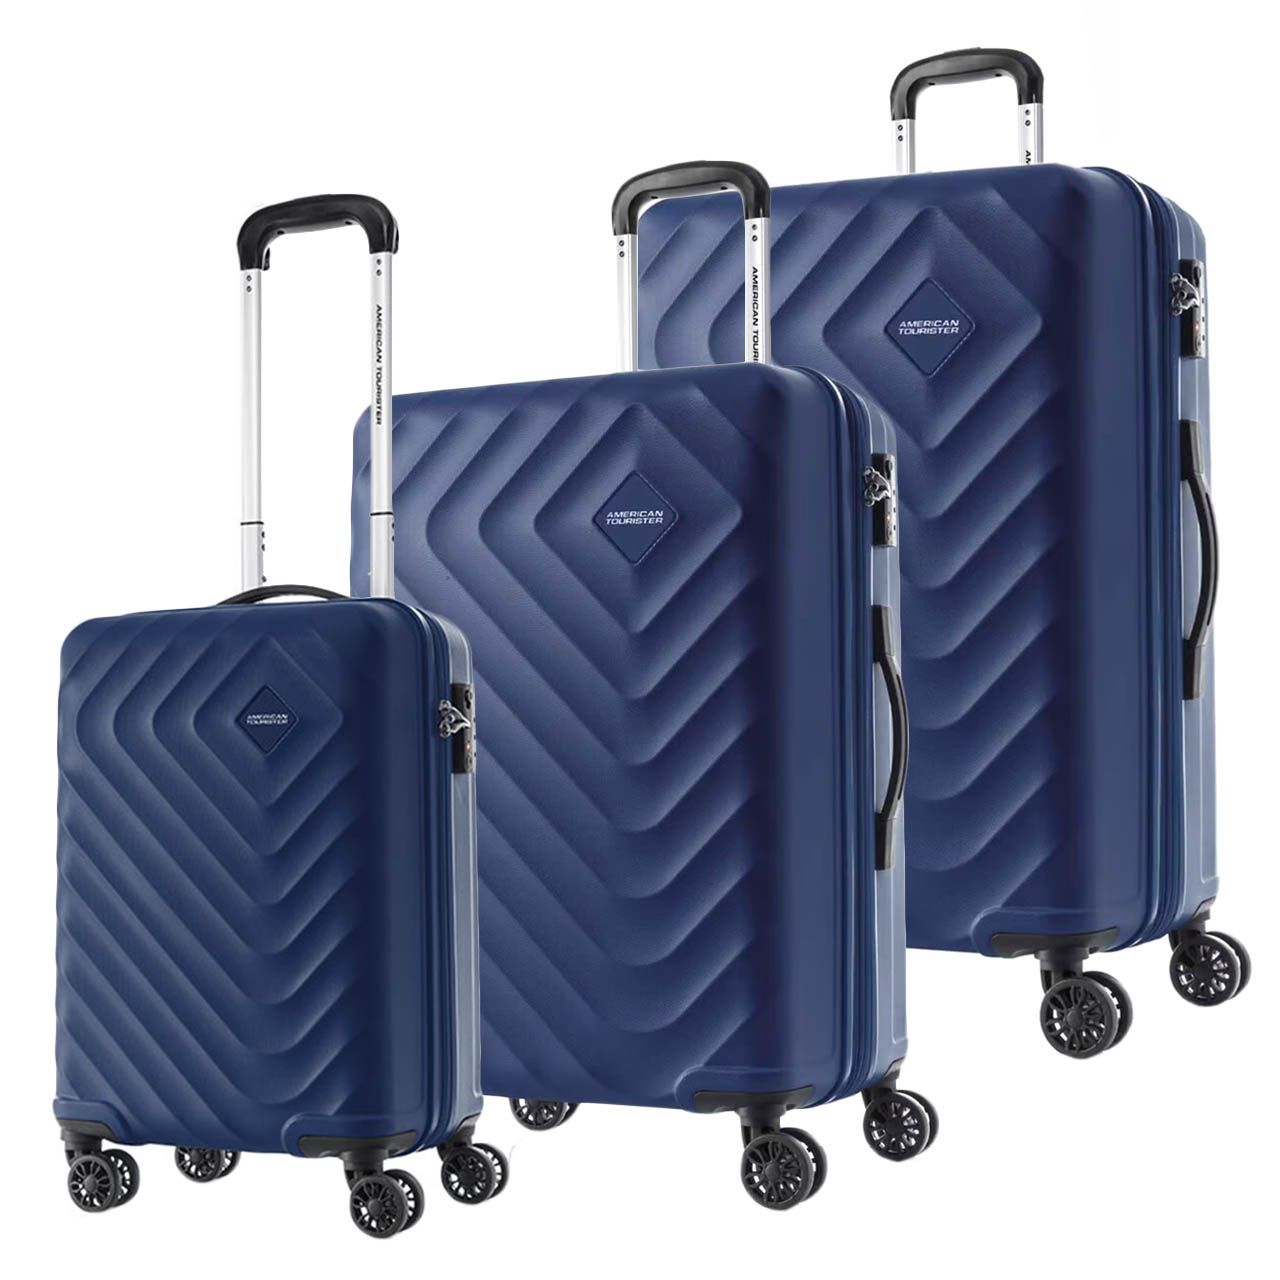 مجموعه سه عددی چمدان امریکن توریستر مدل SENNA QC5 -  - 3